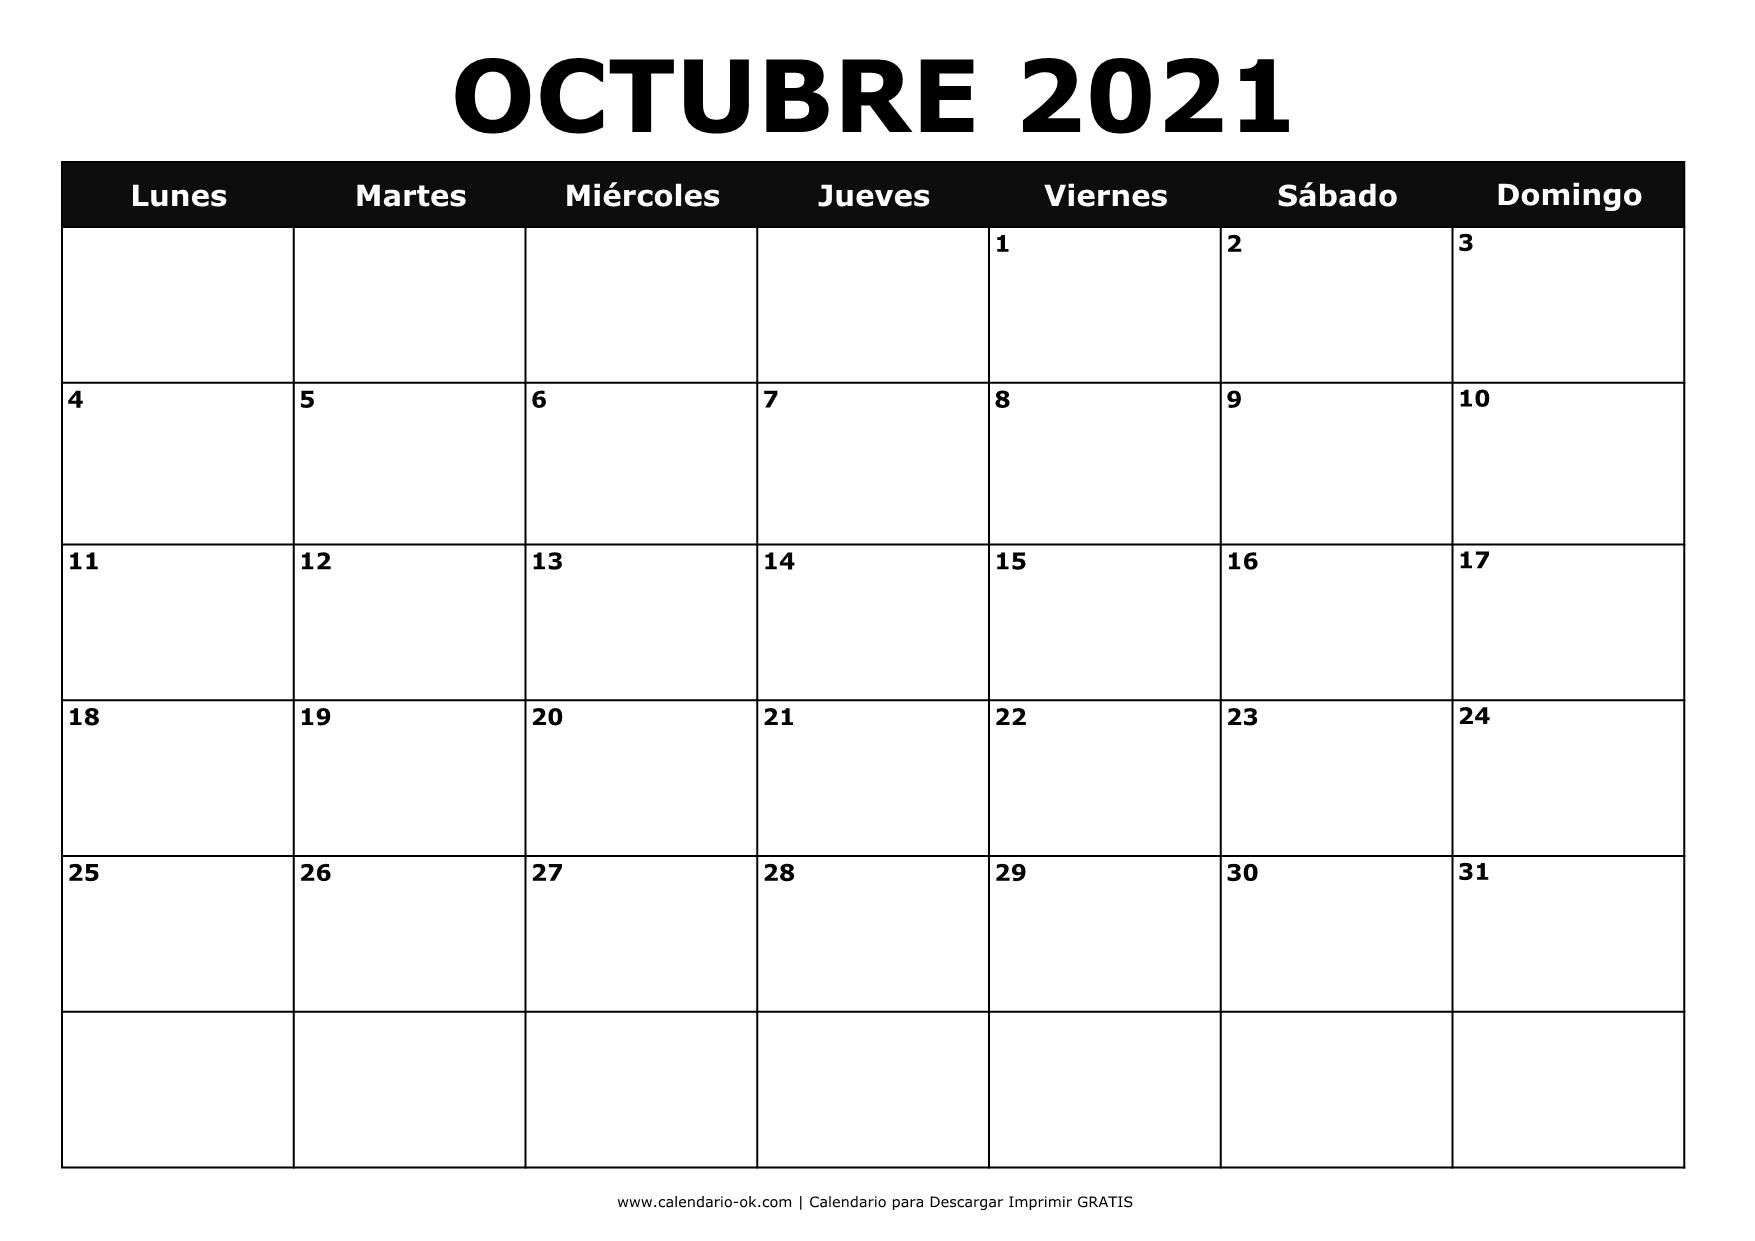 OCTUBRE 2021 BLANCO y NEGRO